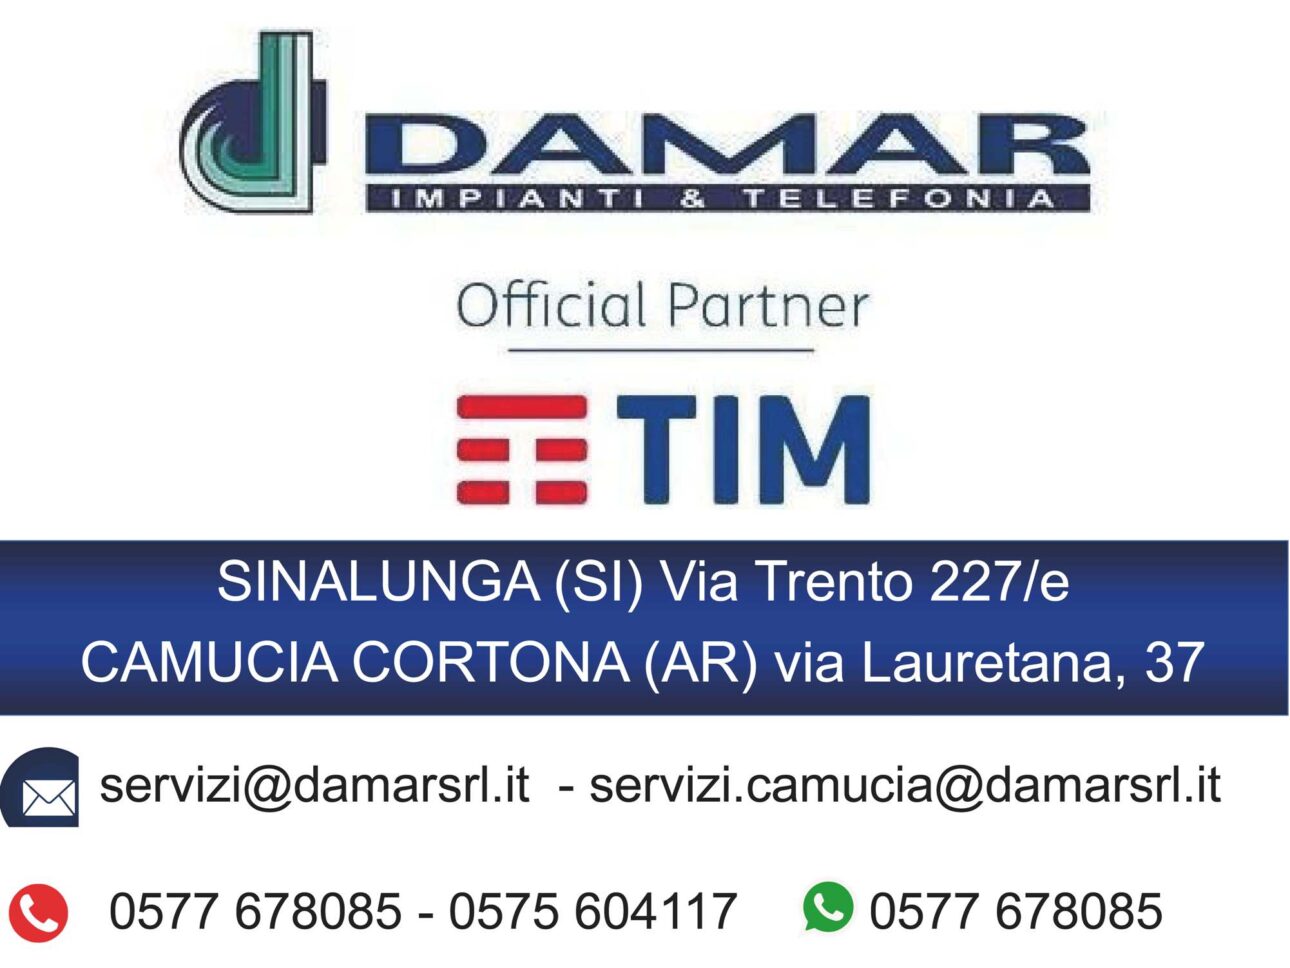 Logo DAMAR TIM